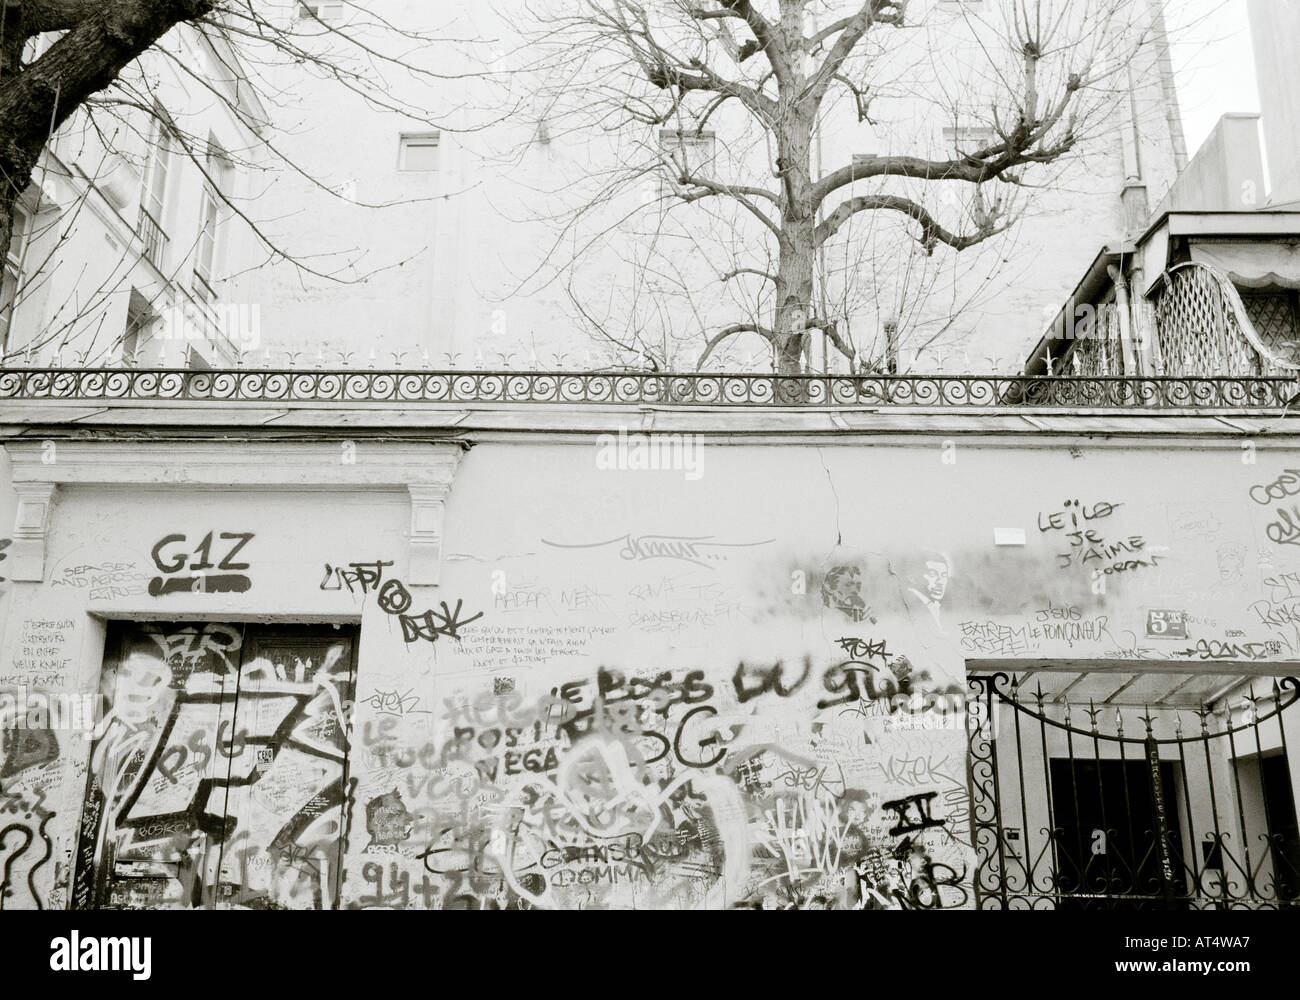 L'extérieur de la maison du souvenir la fin de Serge Gainsbourg dans la ville de Paris en France en Europe Banque D'Images